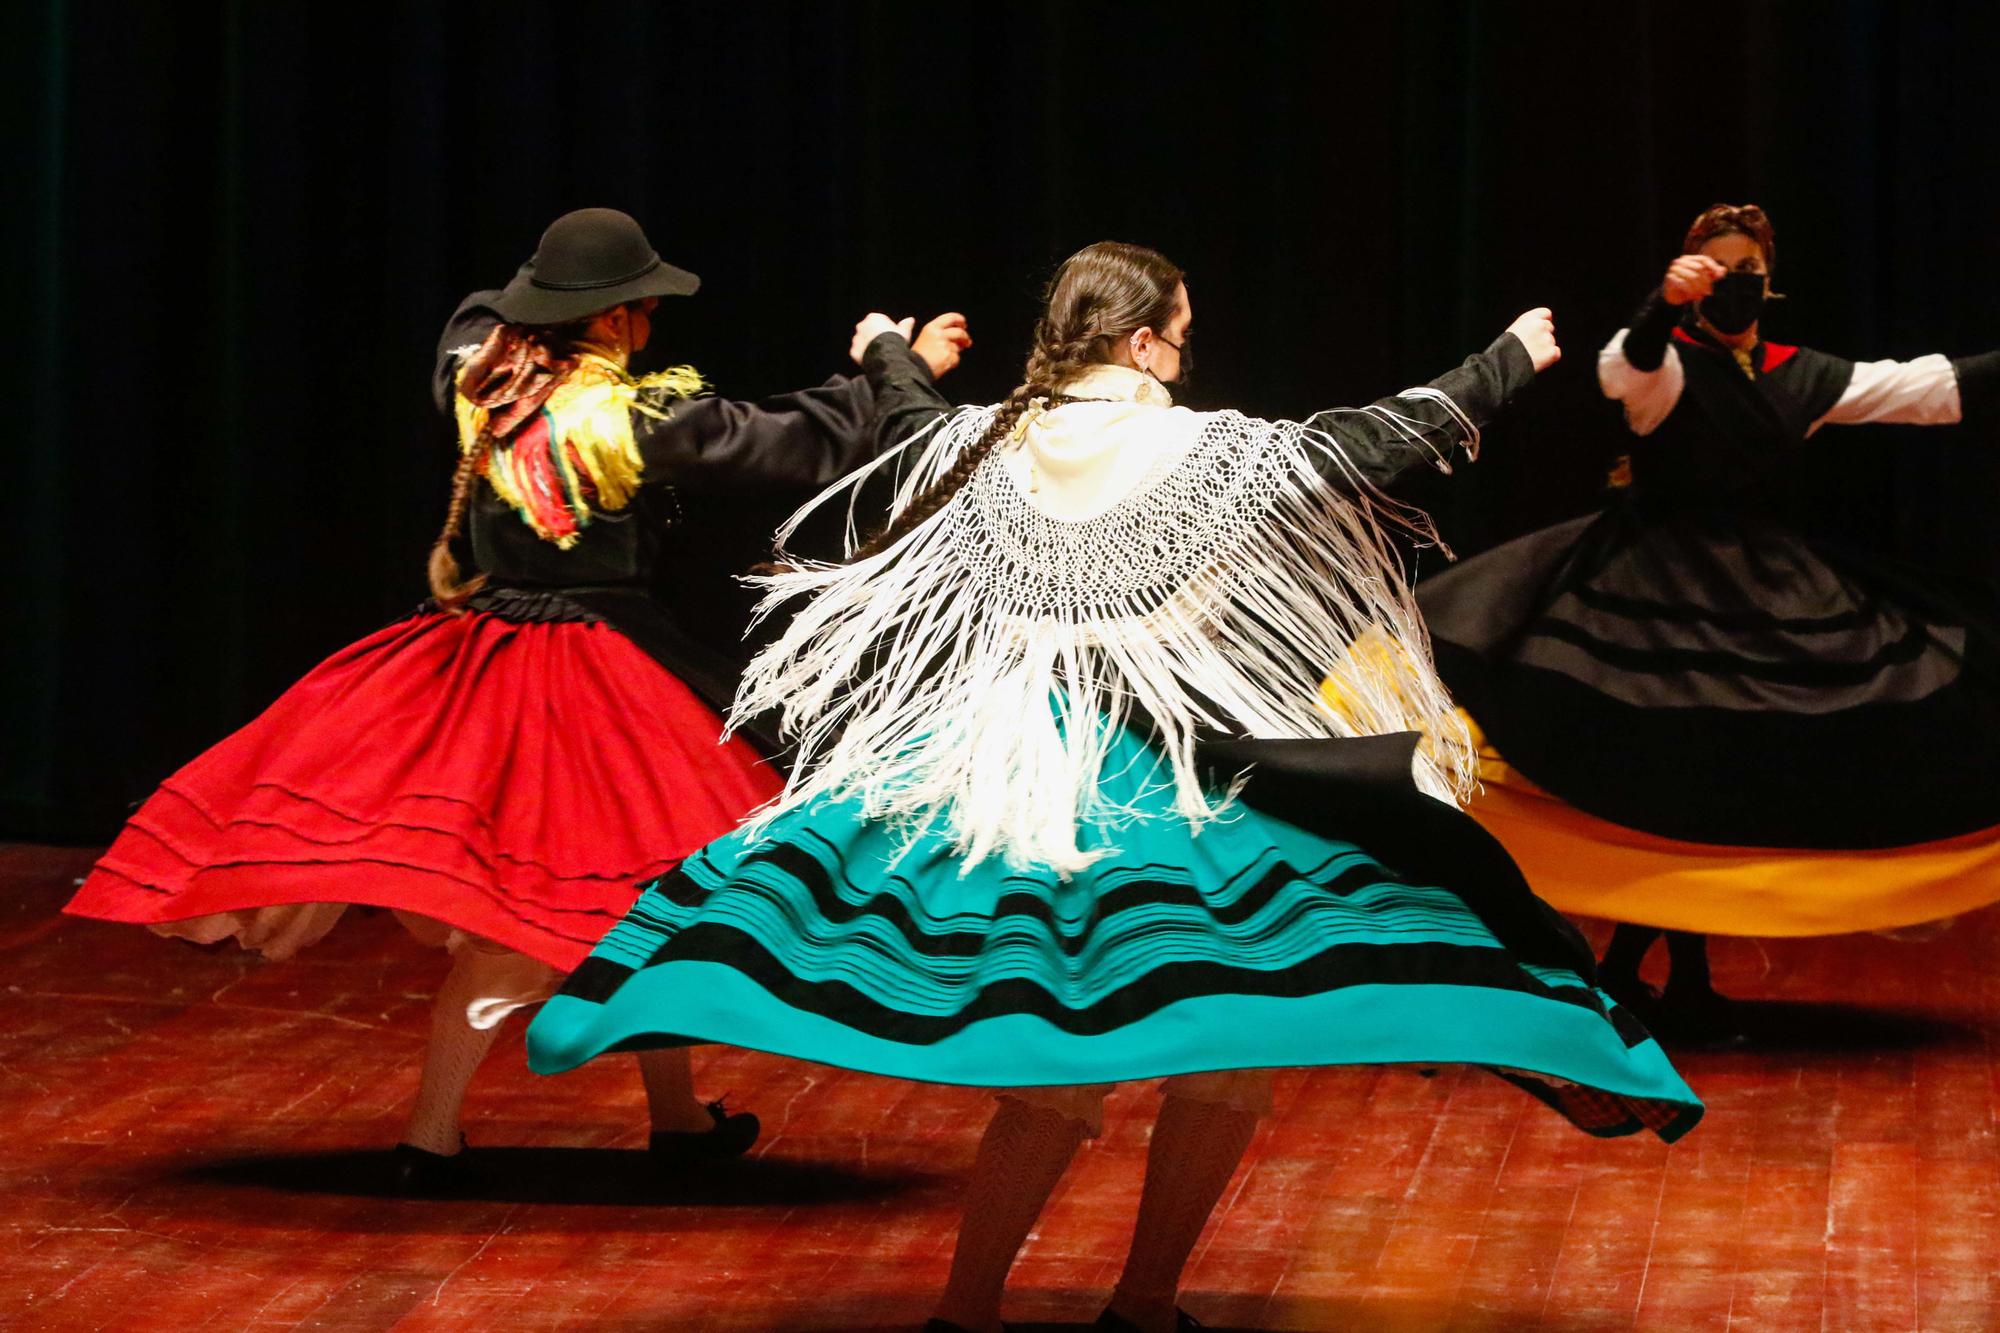 Vilagarcía despide con música y baile las fiestas de Santa Rita